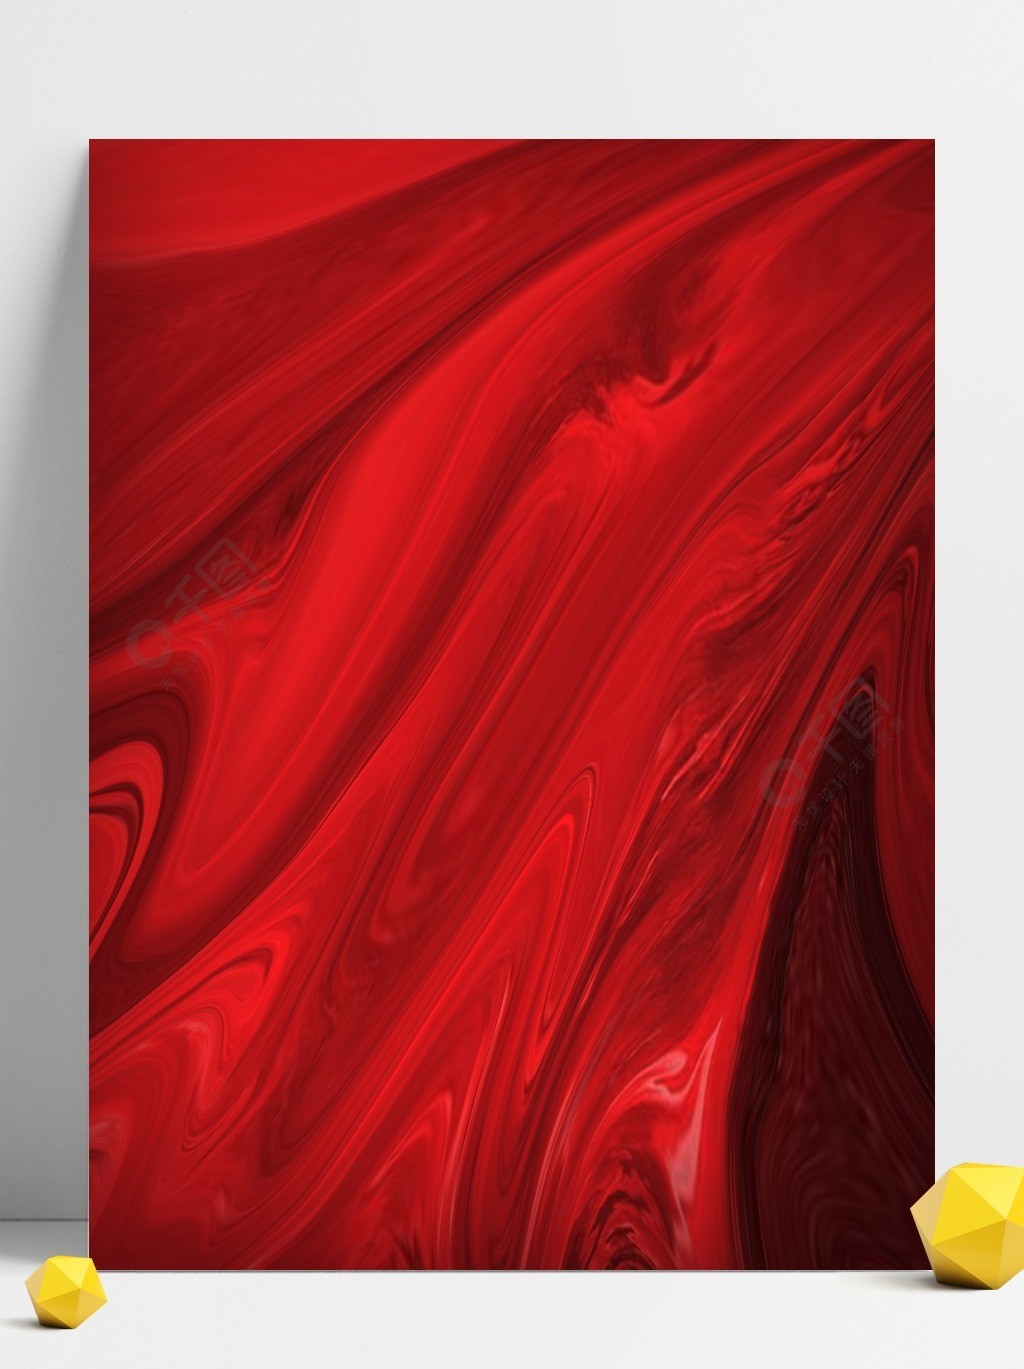 原创抽象流体红色背景1年前发布